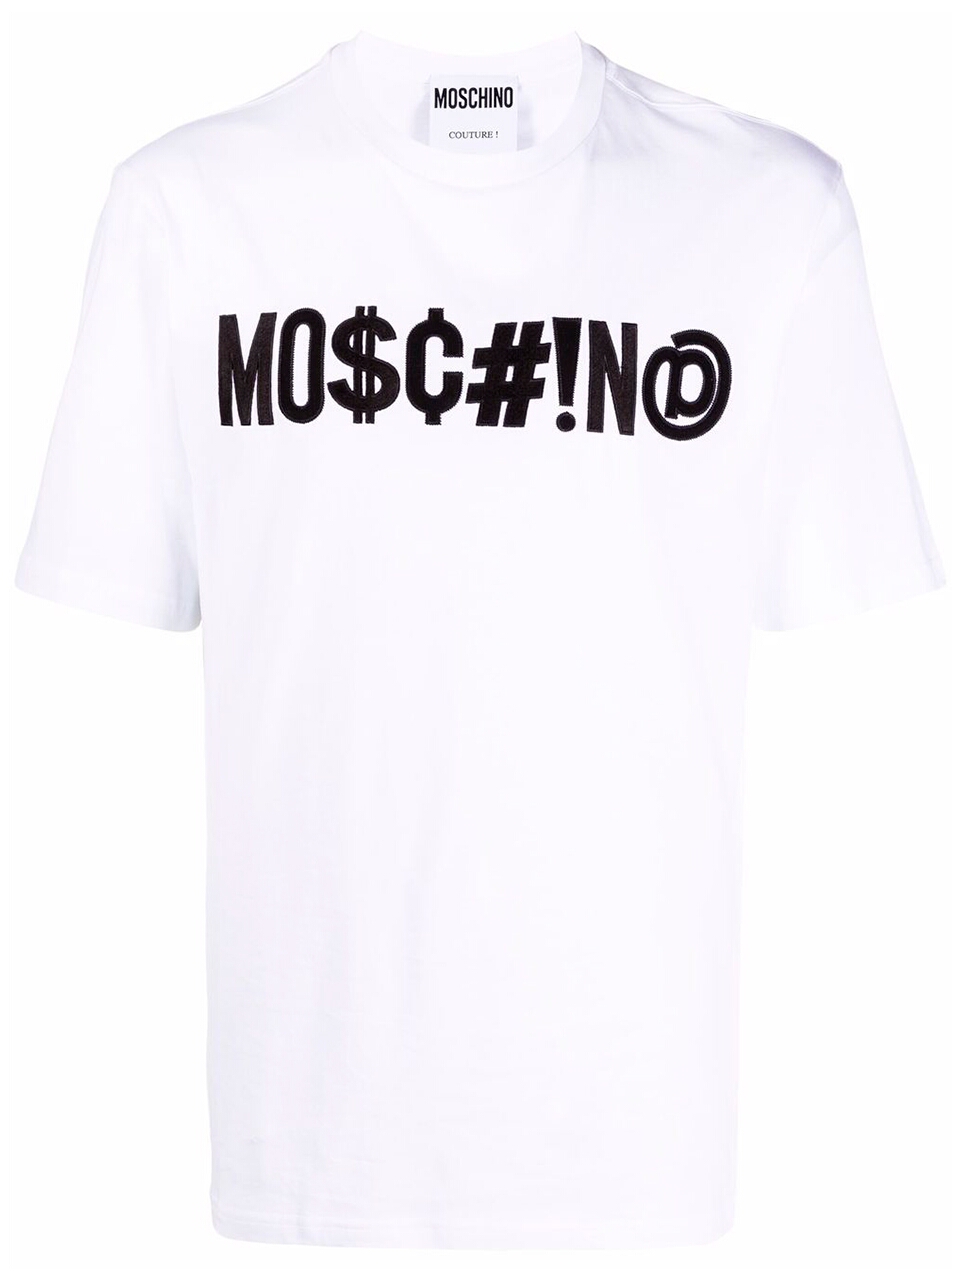 Imagem de: Camiseta Moschino Branca com Logo Symbols Preto